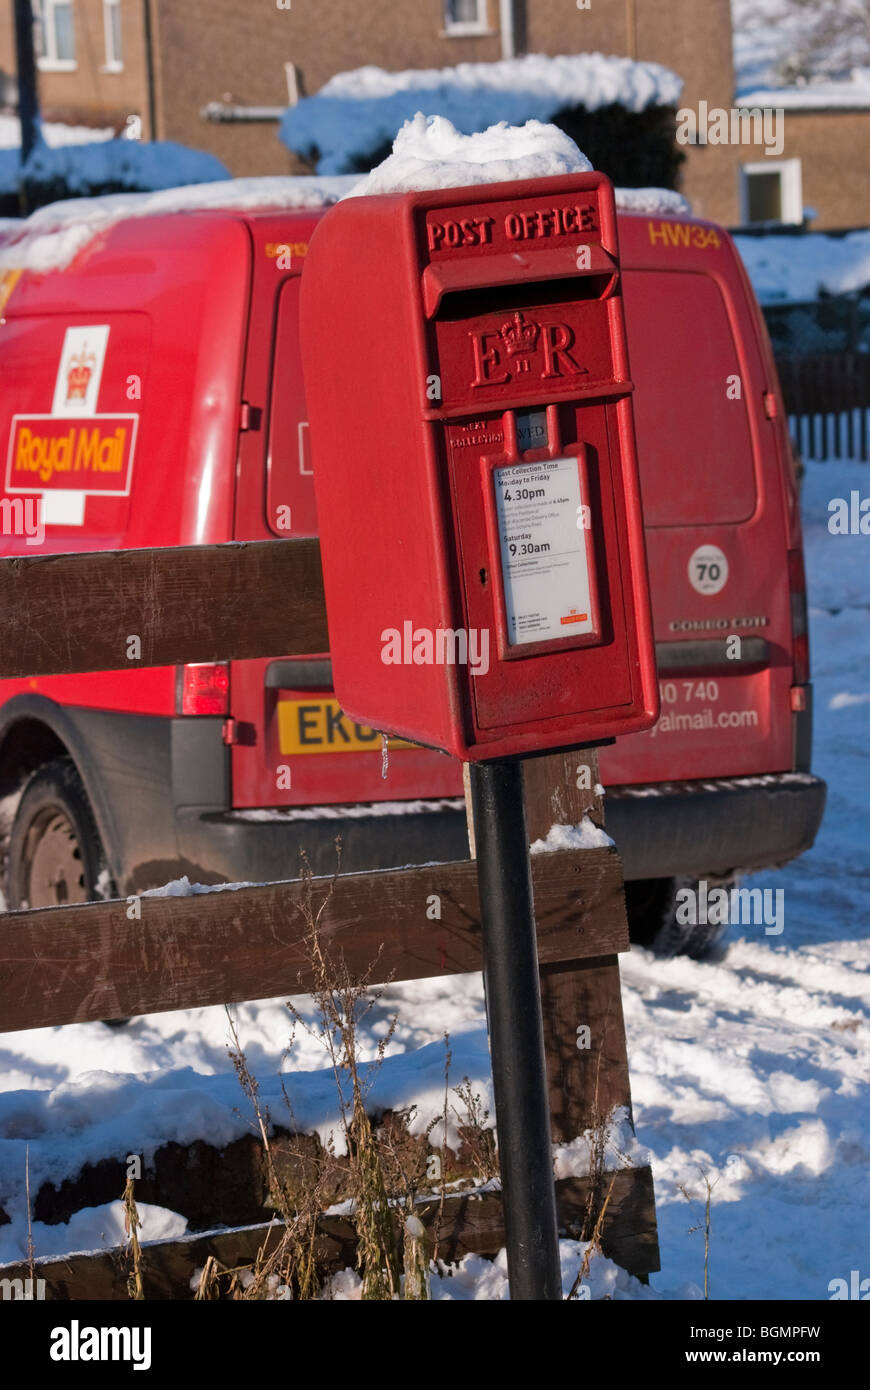 Un Royal Mail delivery van garé à côté d'une tête de neige la reine Elizabeth II, boîte de lampe Buckinghamshire, Angleterre, Royaume-Uni. Banque D'Images